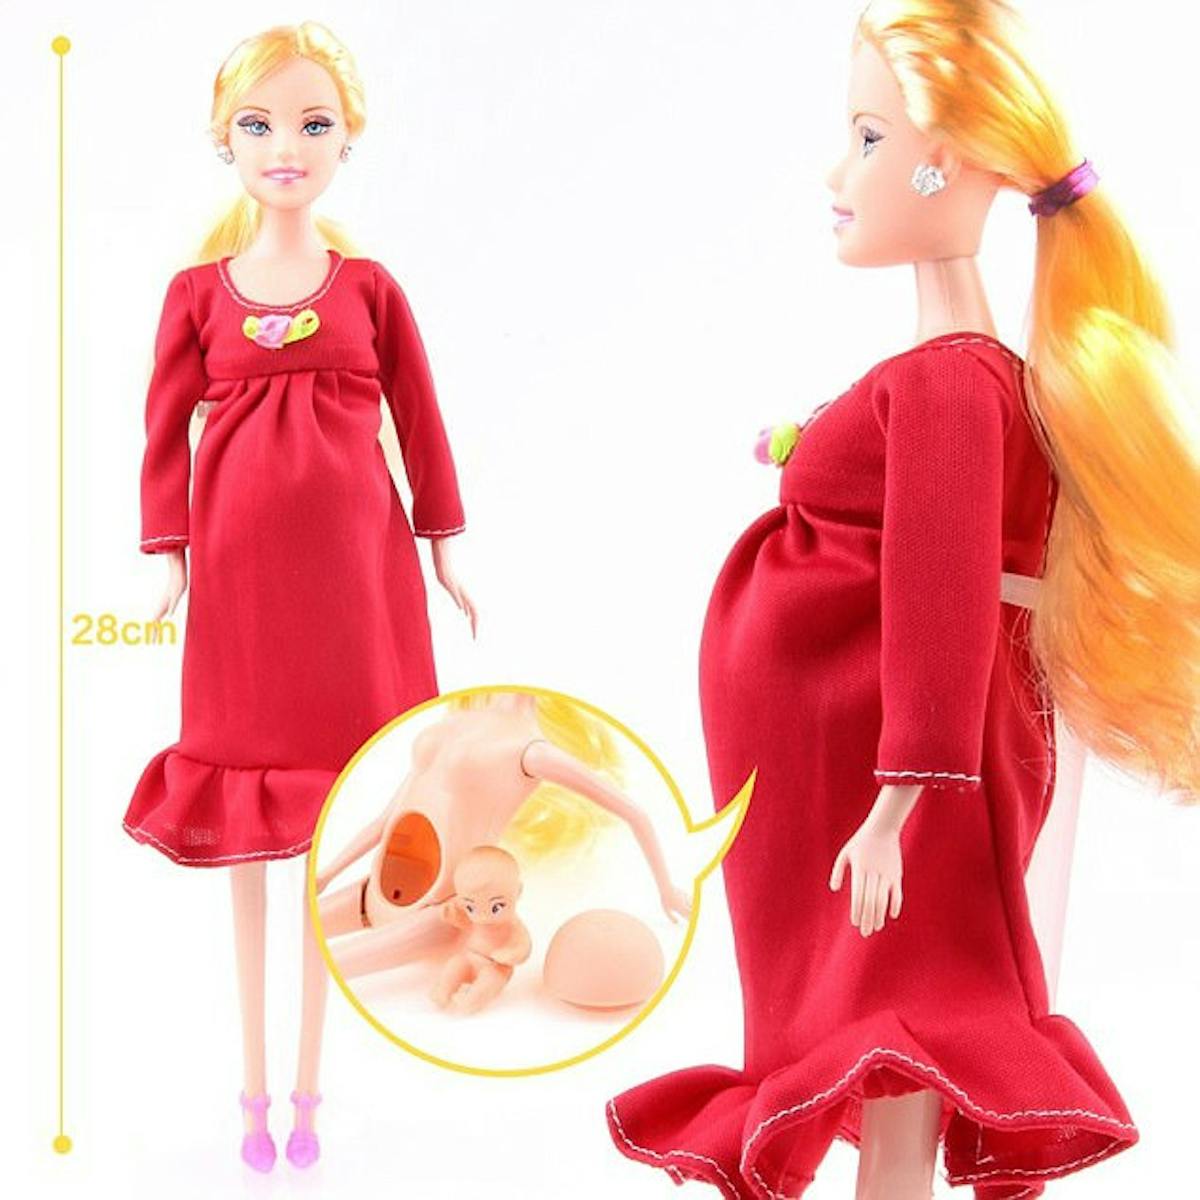 La Barbie enceinte de Mattel crée l'indignation chez les parents